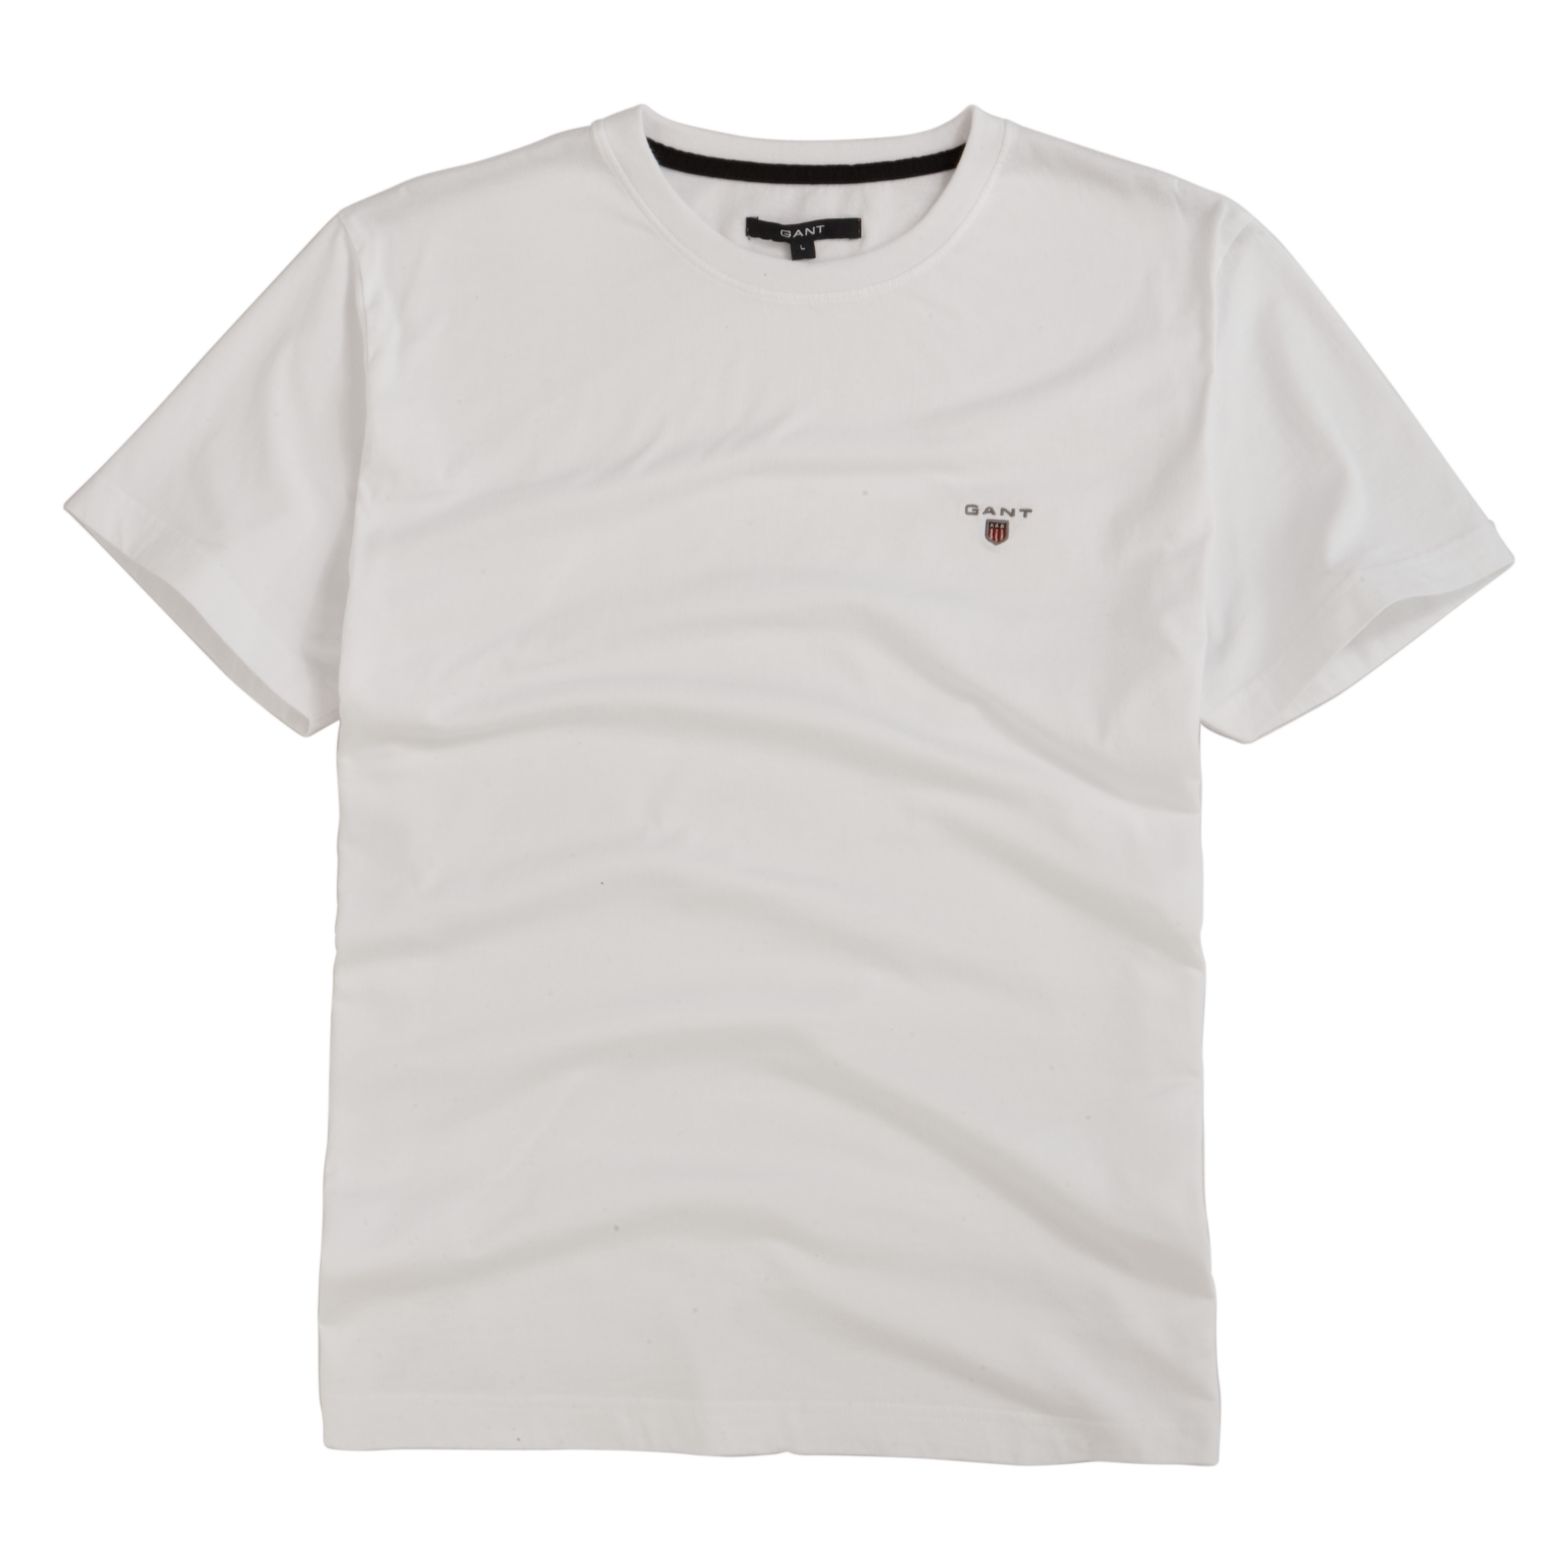 Gant Short Sleeve Solid T-Shirt, White